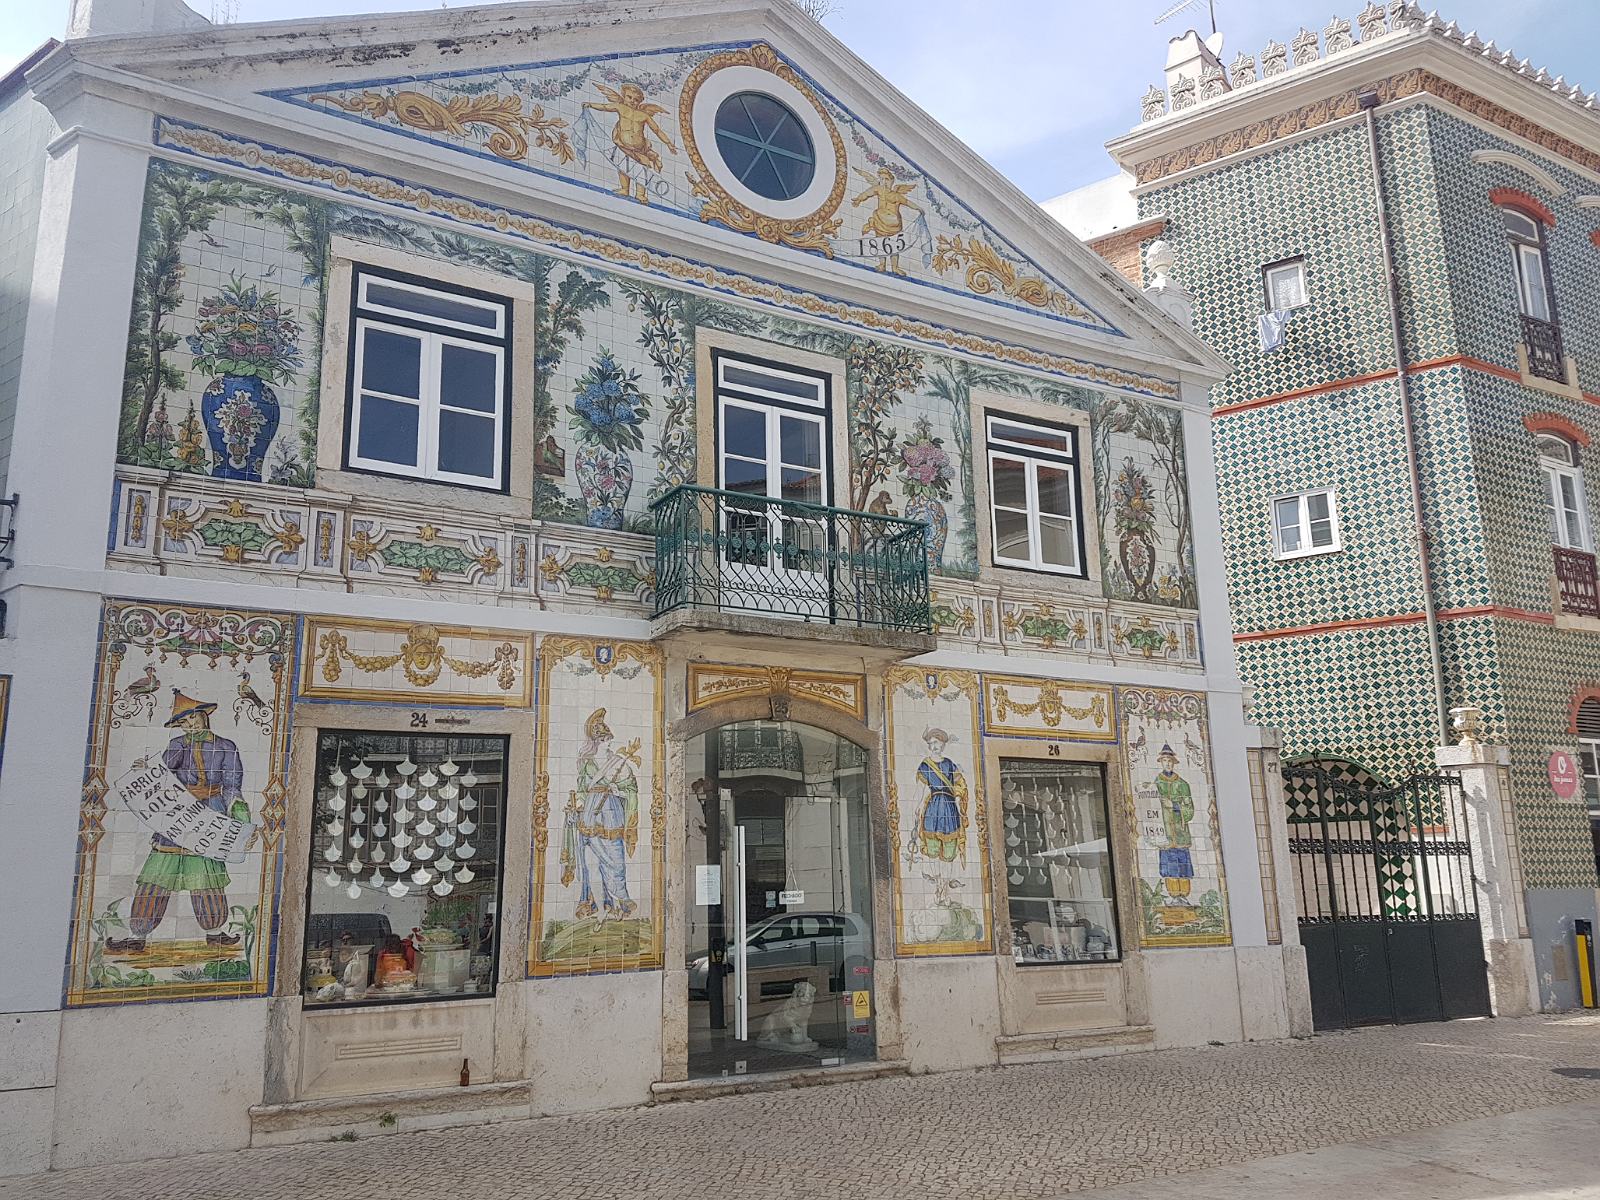 65. Stara wytwórnia ceramiki w okolicach Intendente w Lizbonie.